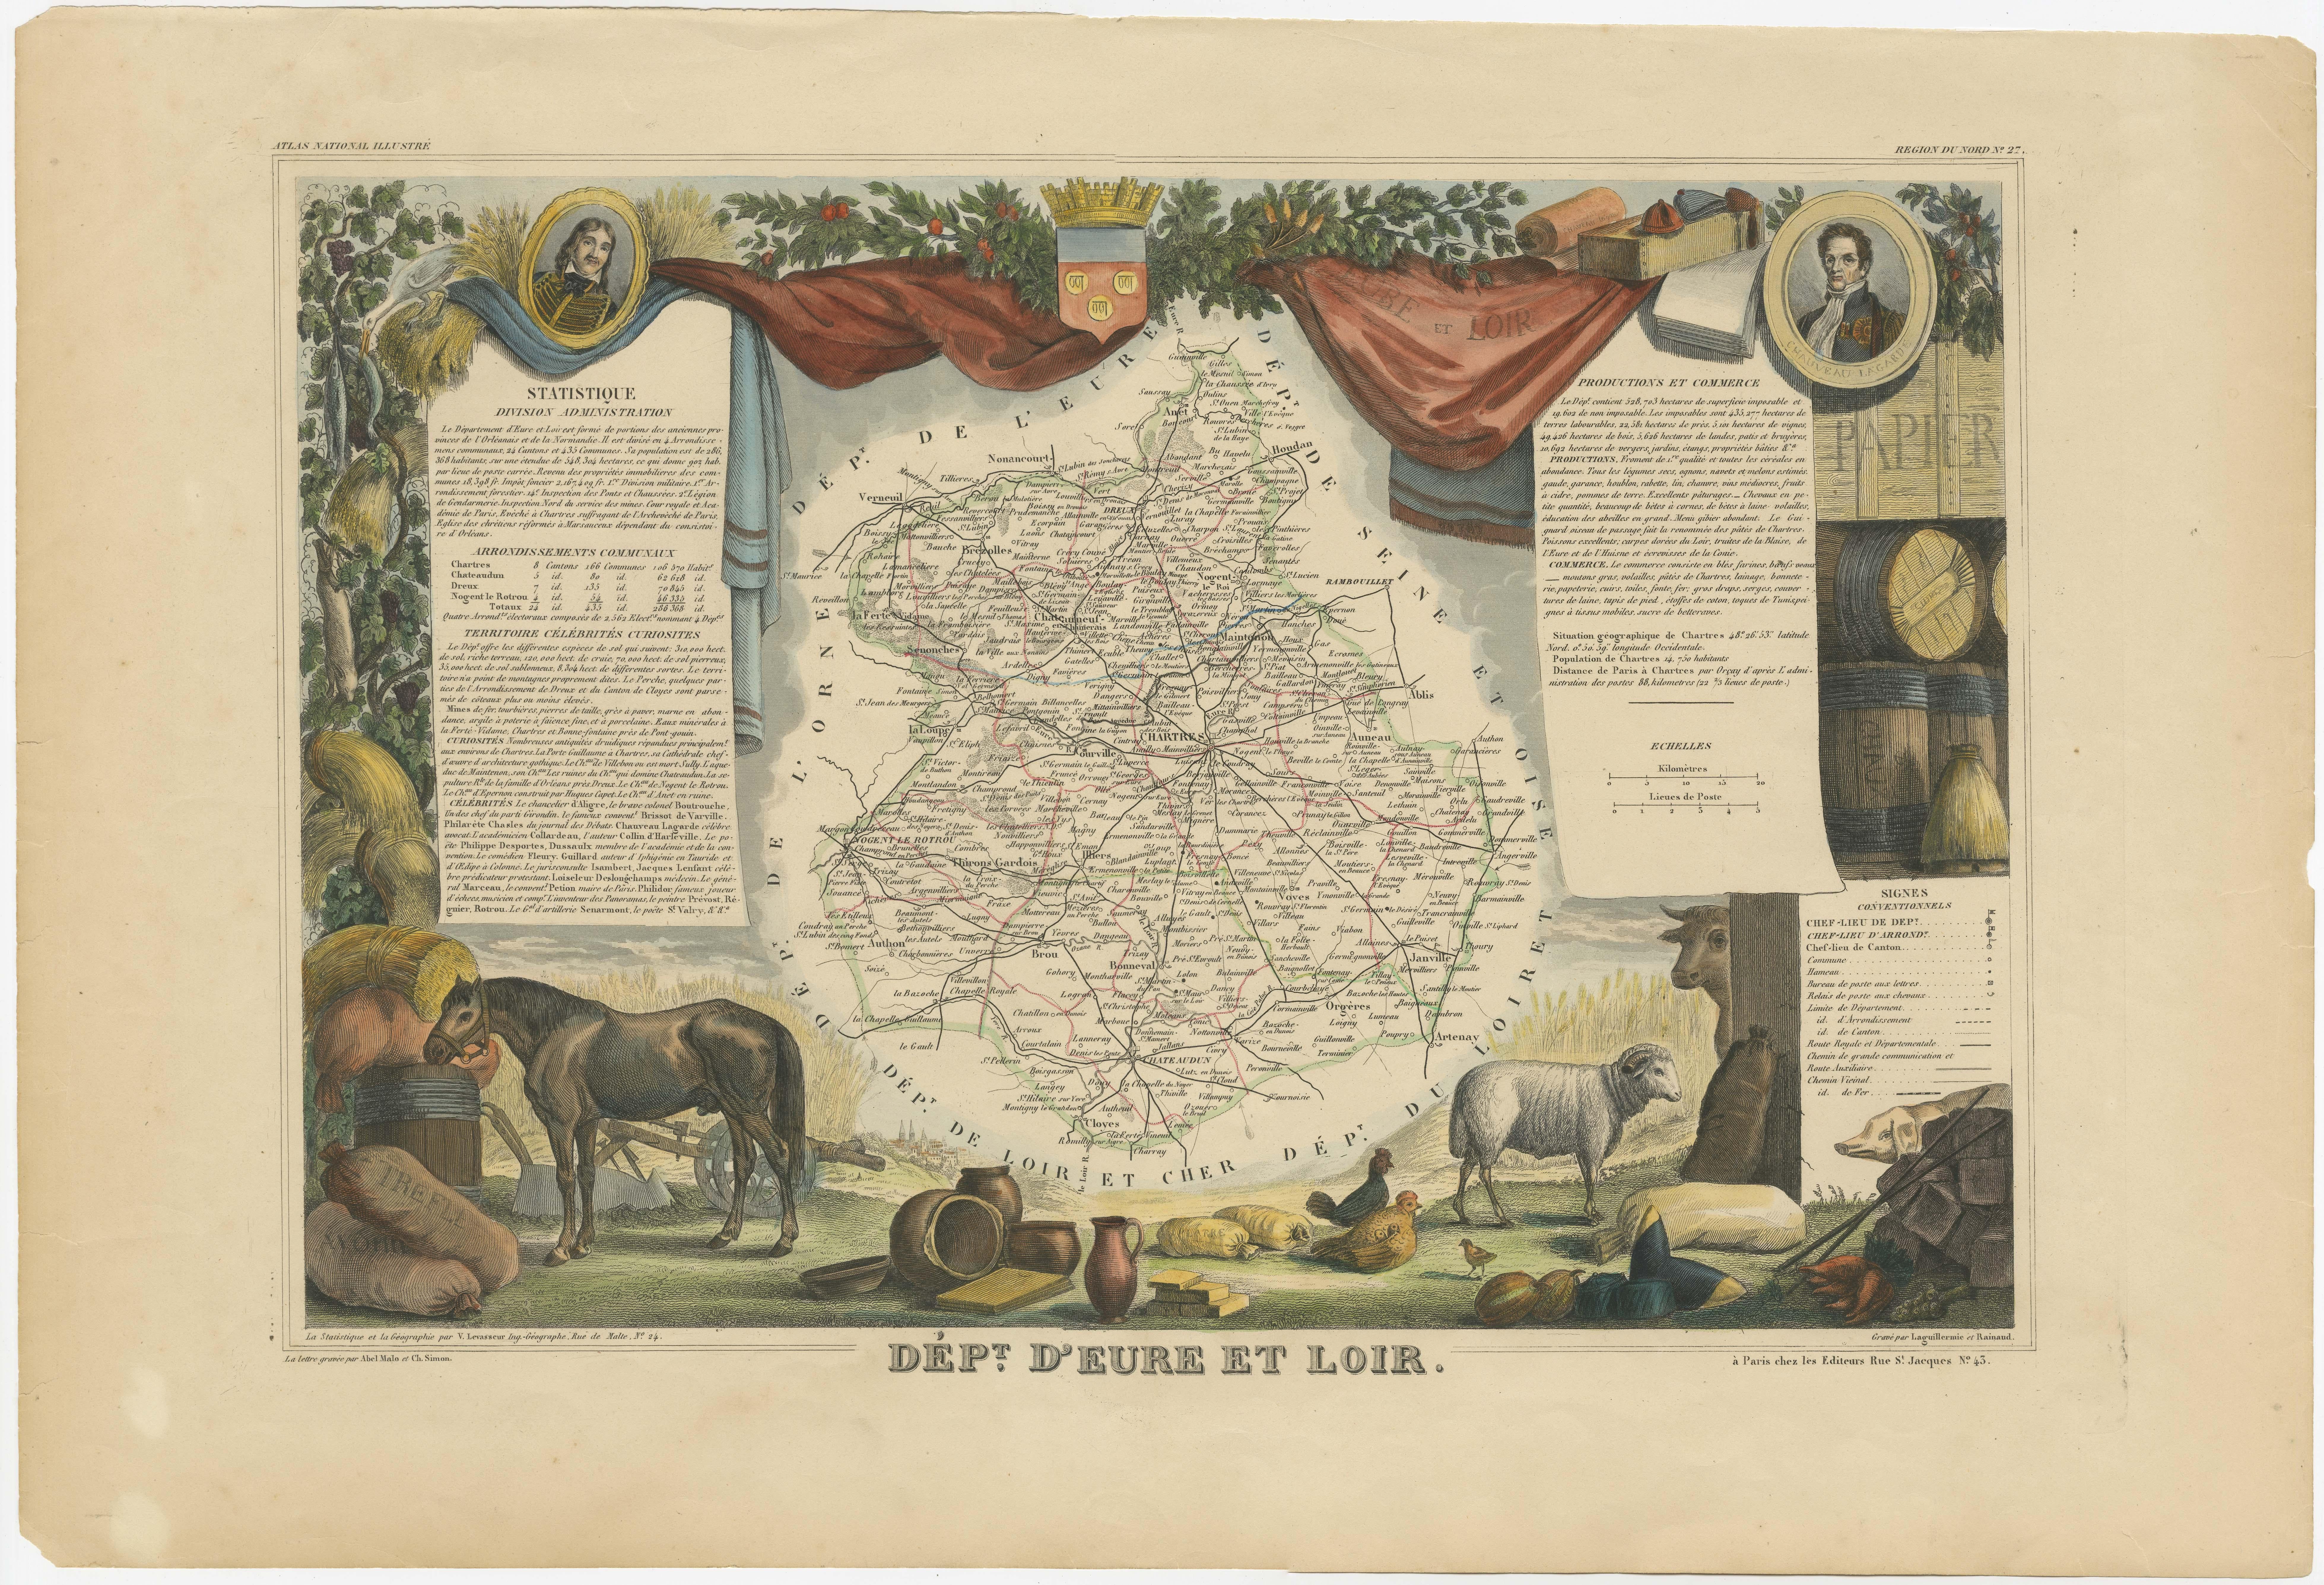 Antike Karte mit dem Titel 'Dépt. d'Eure et Loir'. Karte des französischen Departements Eure-et-Loir, Frankreich. In dieser Gegend befindet sich die berühmte Kathedrale von Chartres. Das Ganze ist von aufwendigen dekorativen Gravuren umgeben, die